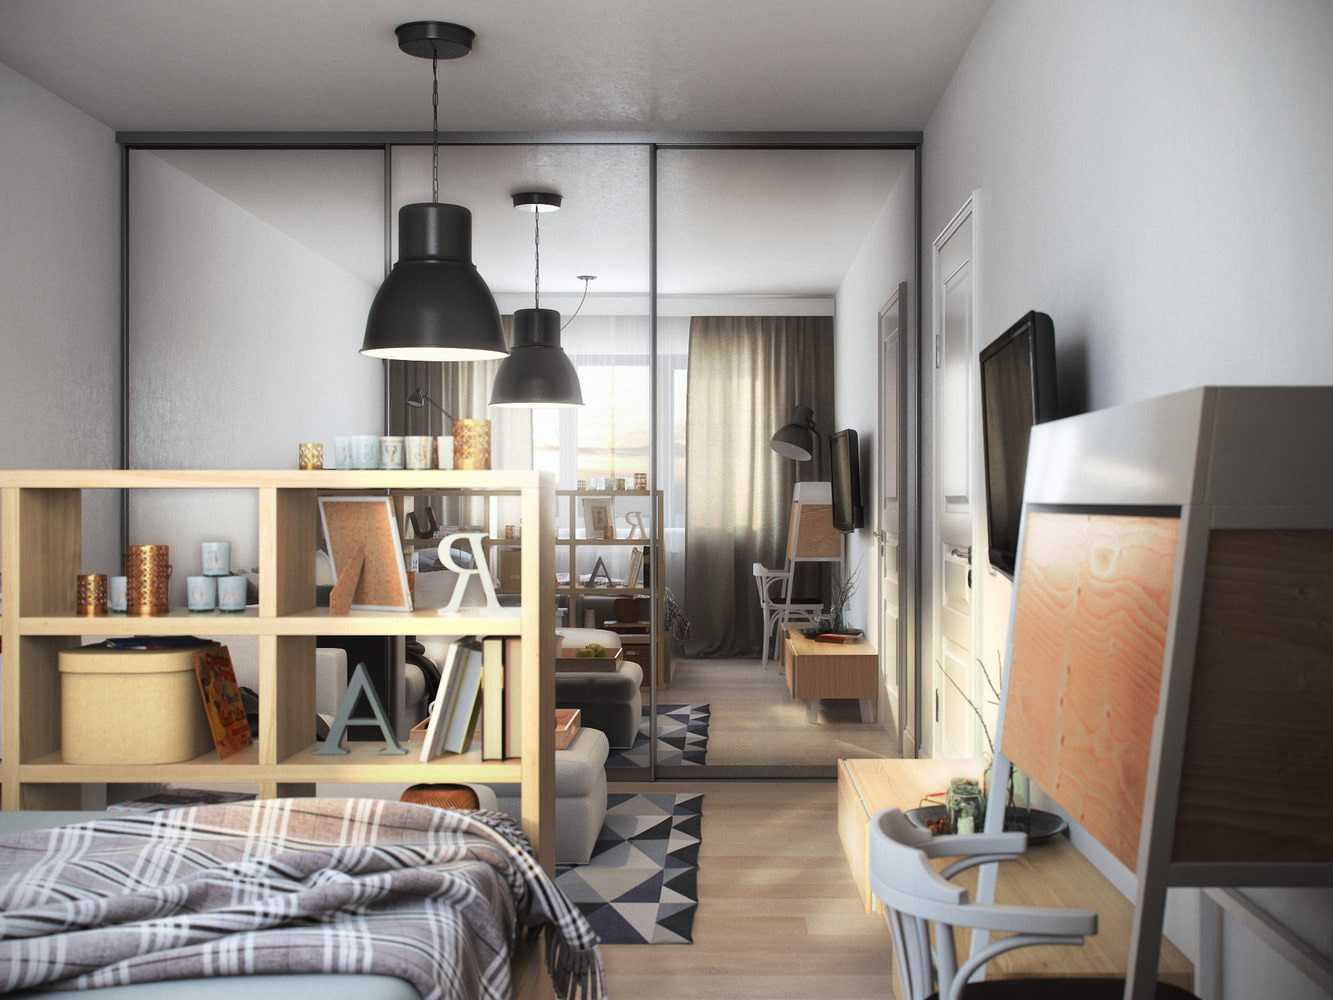 Идеи для маленькой квартиры. бюджетно и стильно!
идеи для маленькой квартиры. бюджетно и стильно!